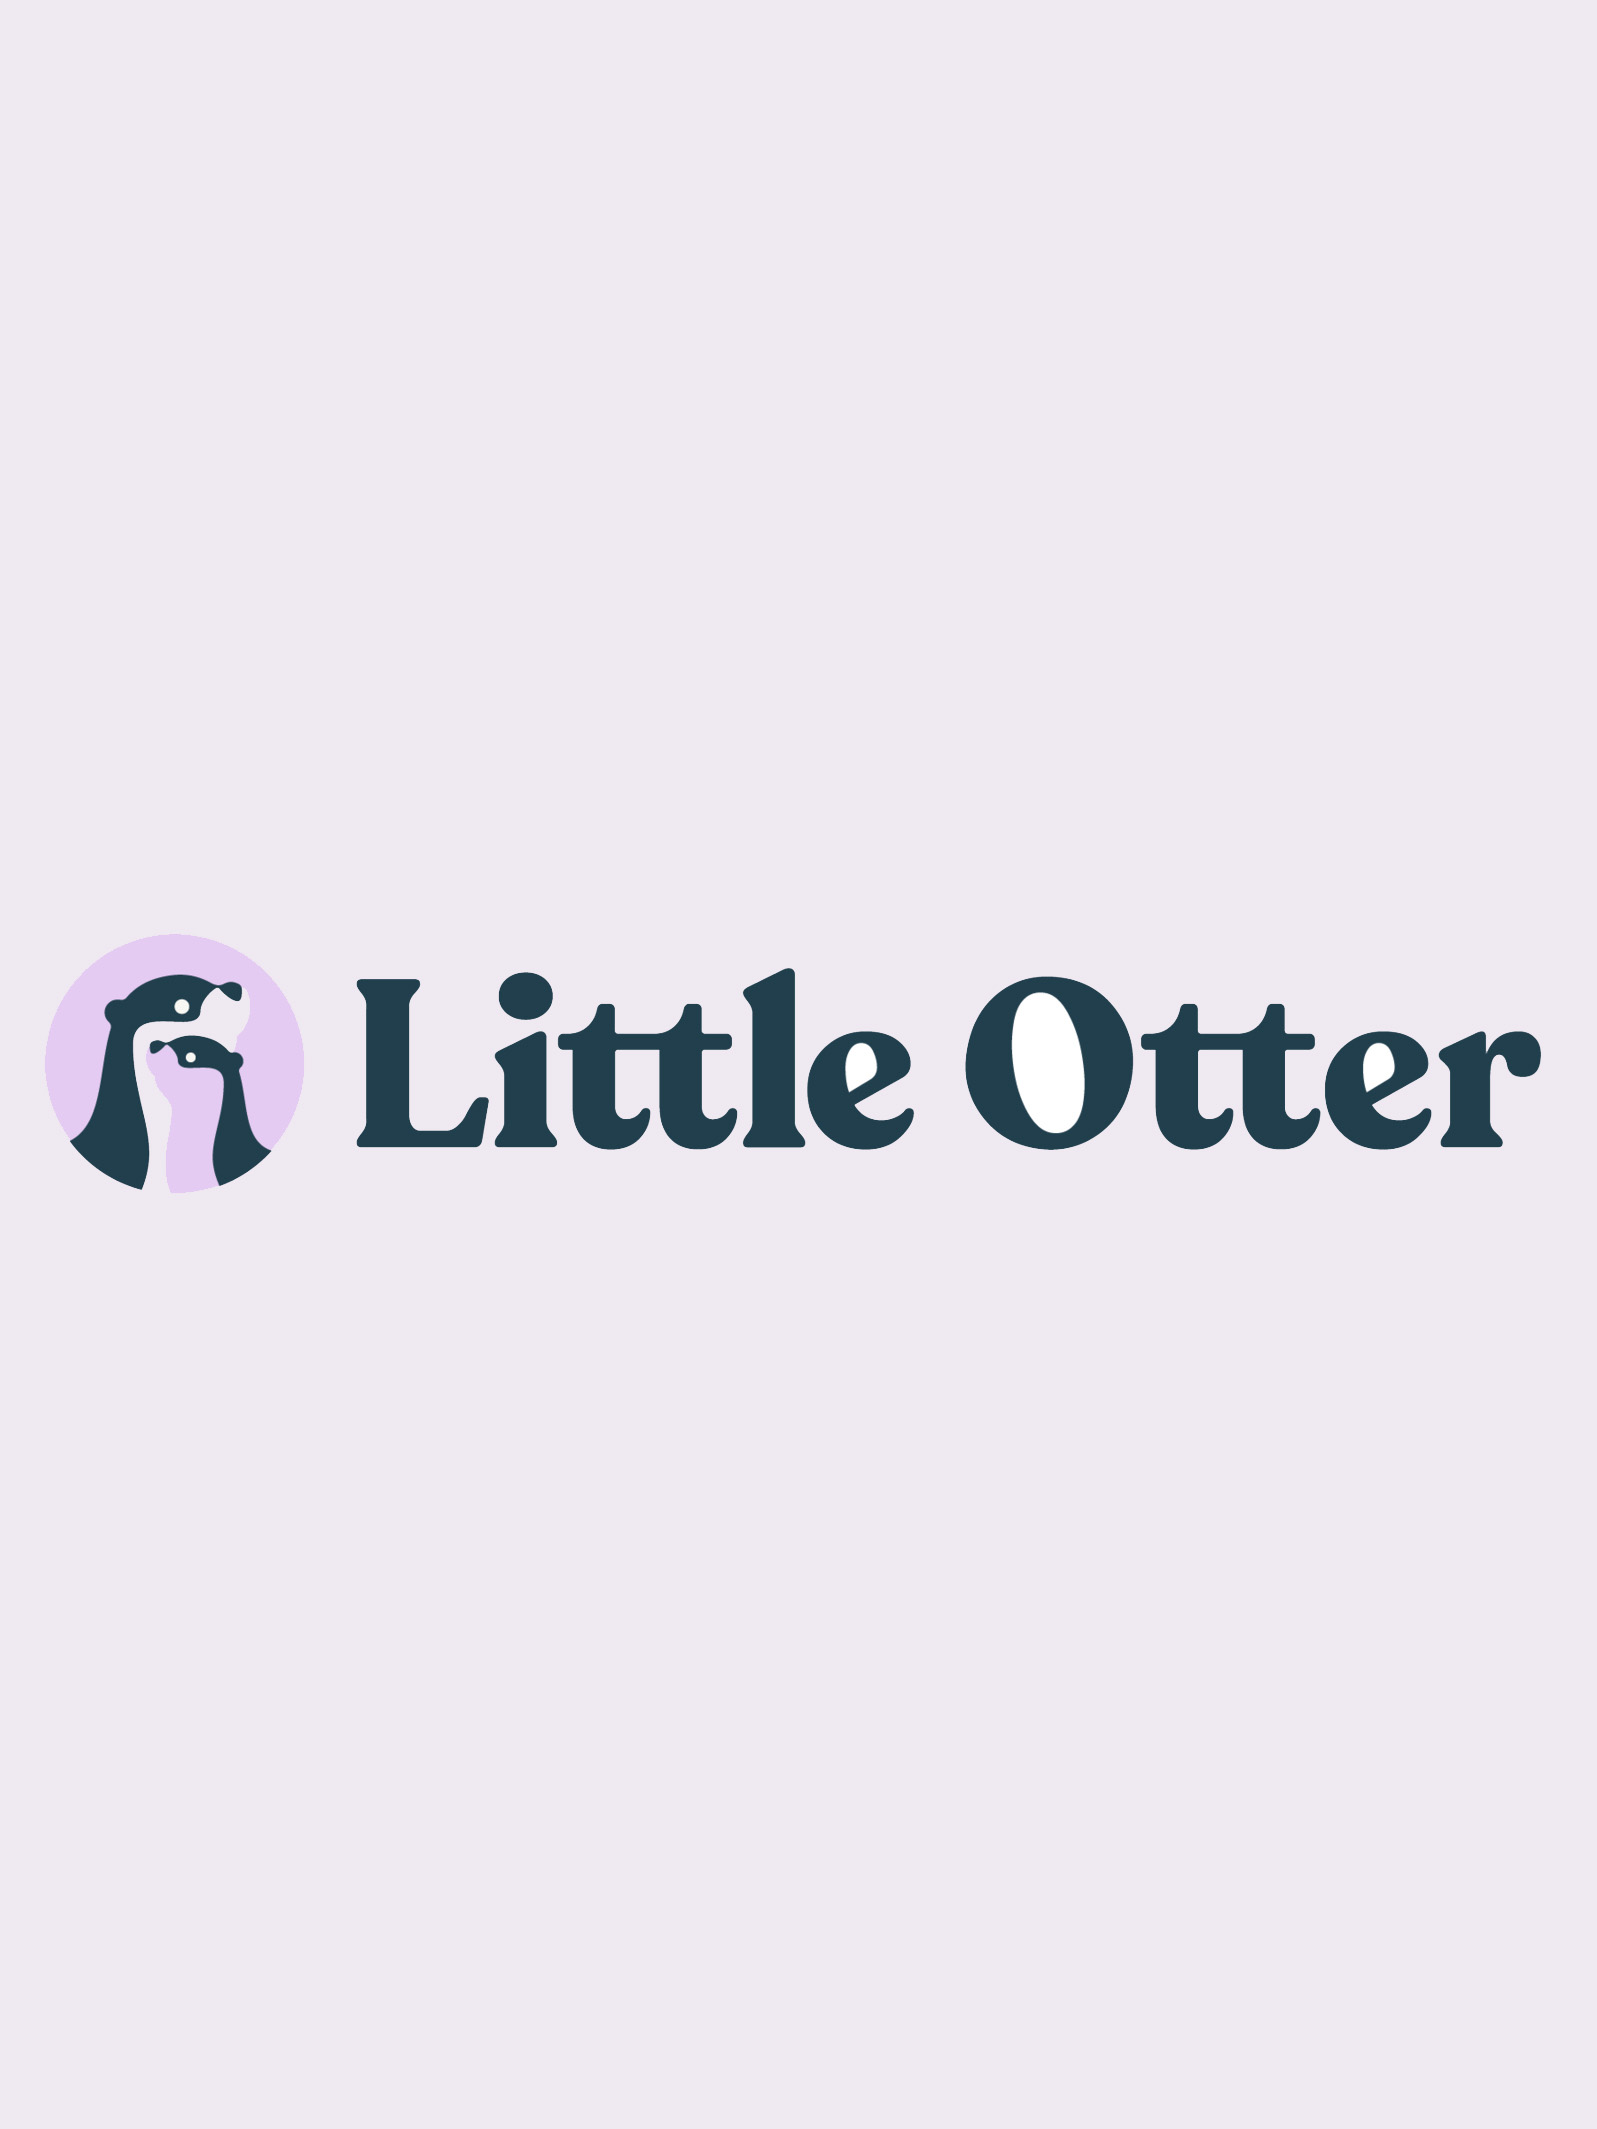 The Little Otter logo.